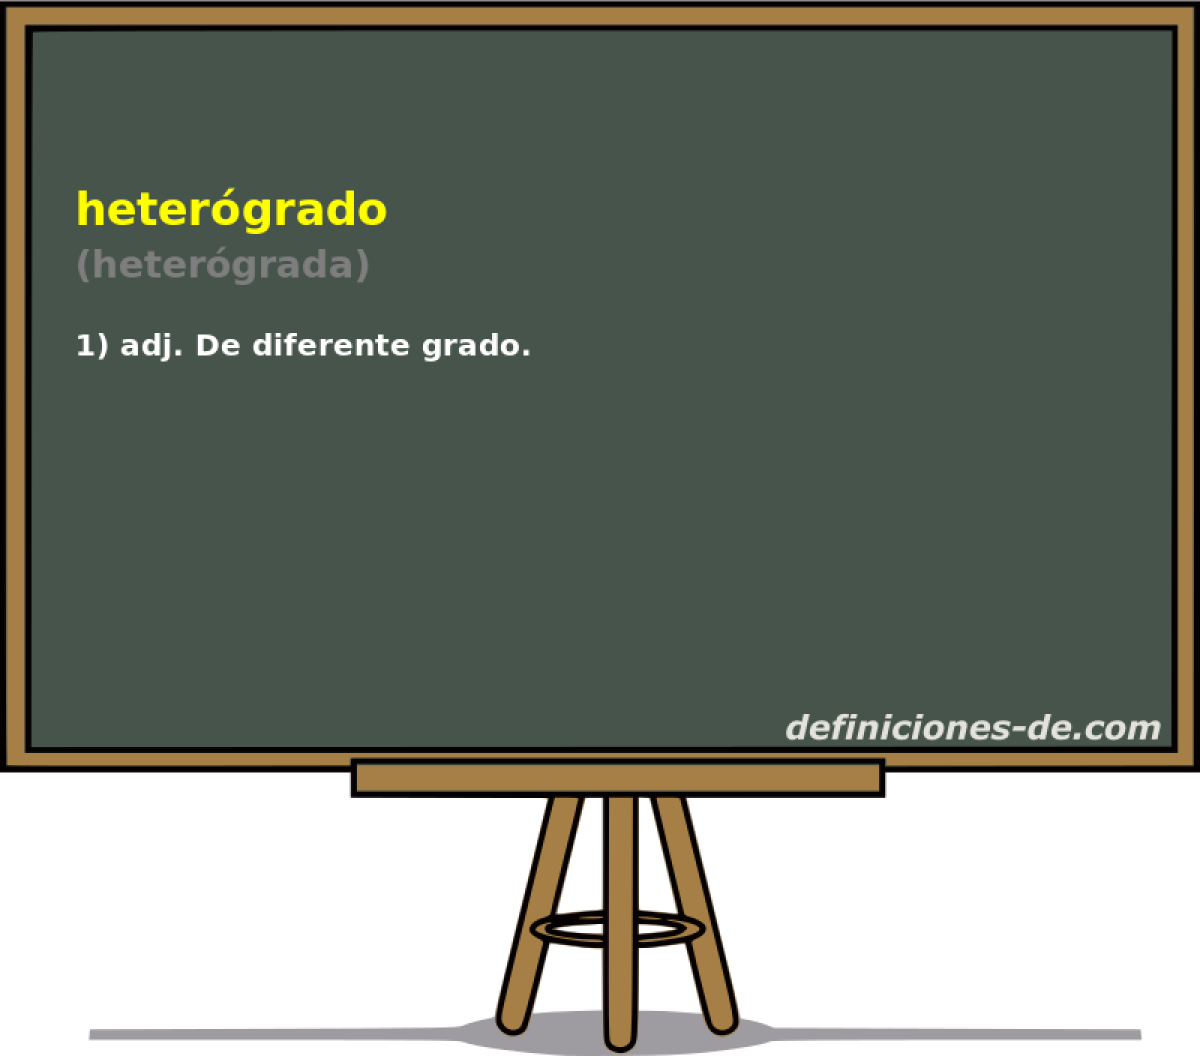 hetergrado (hetergrada)